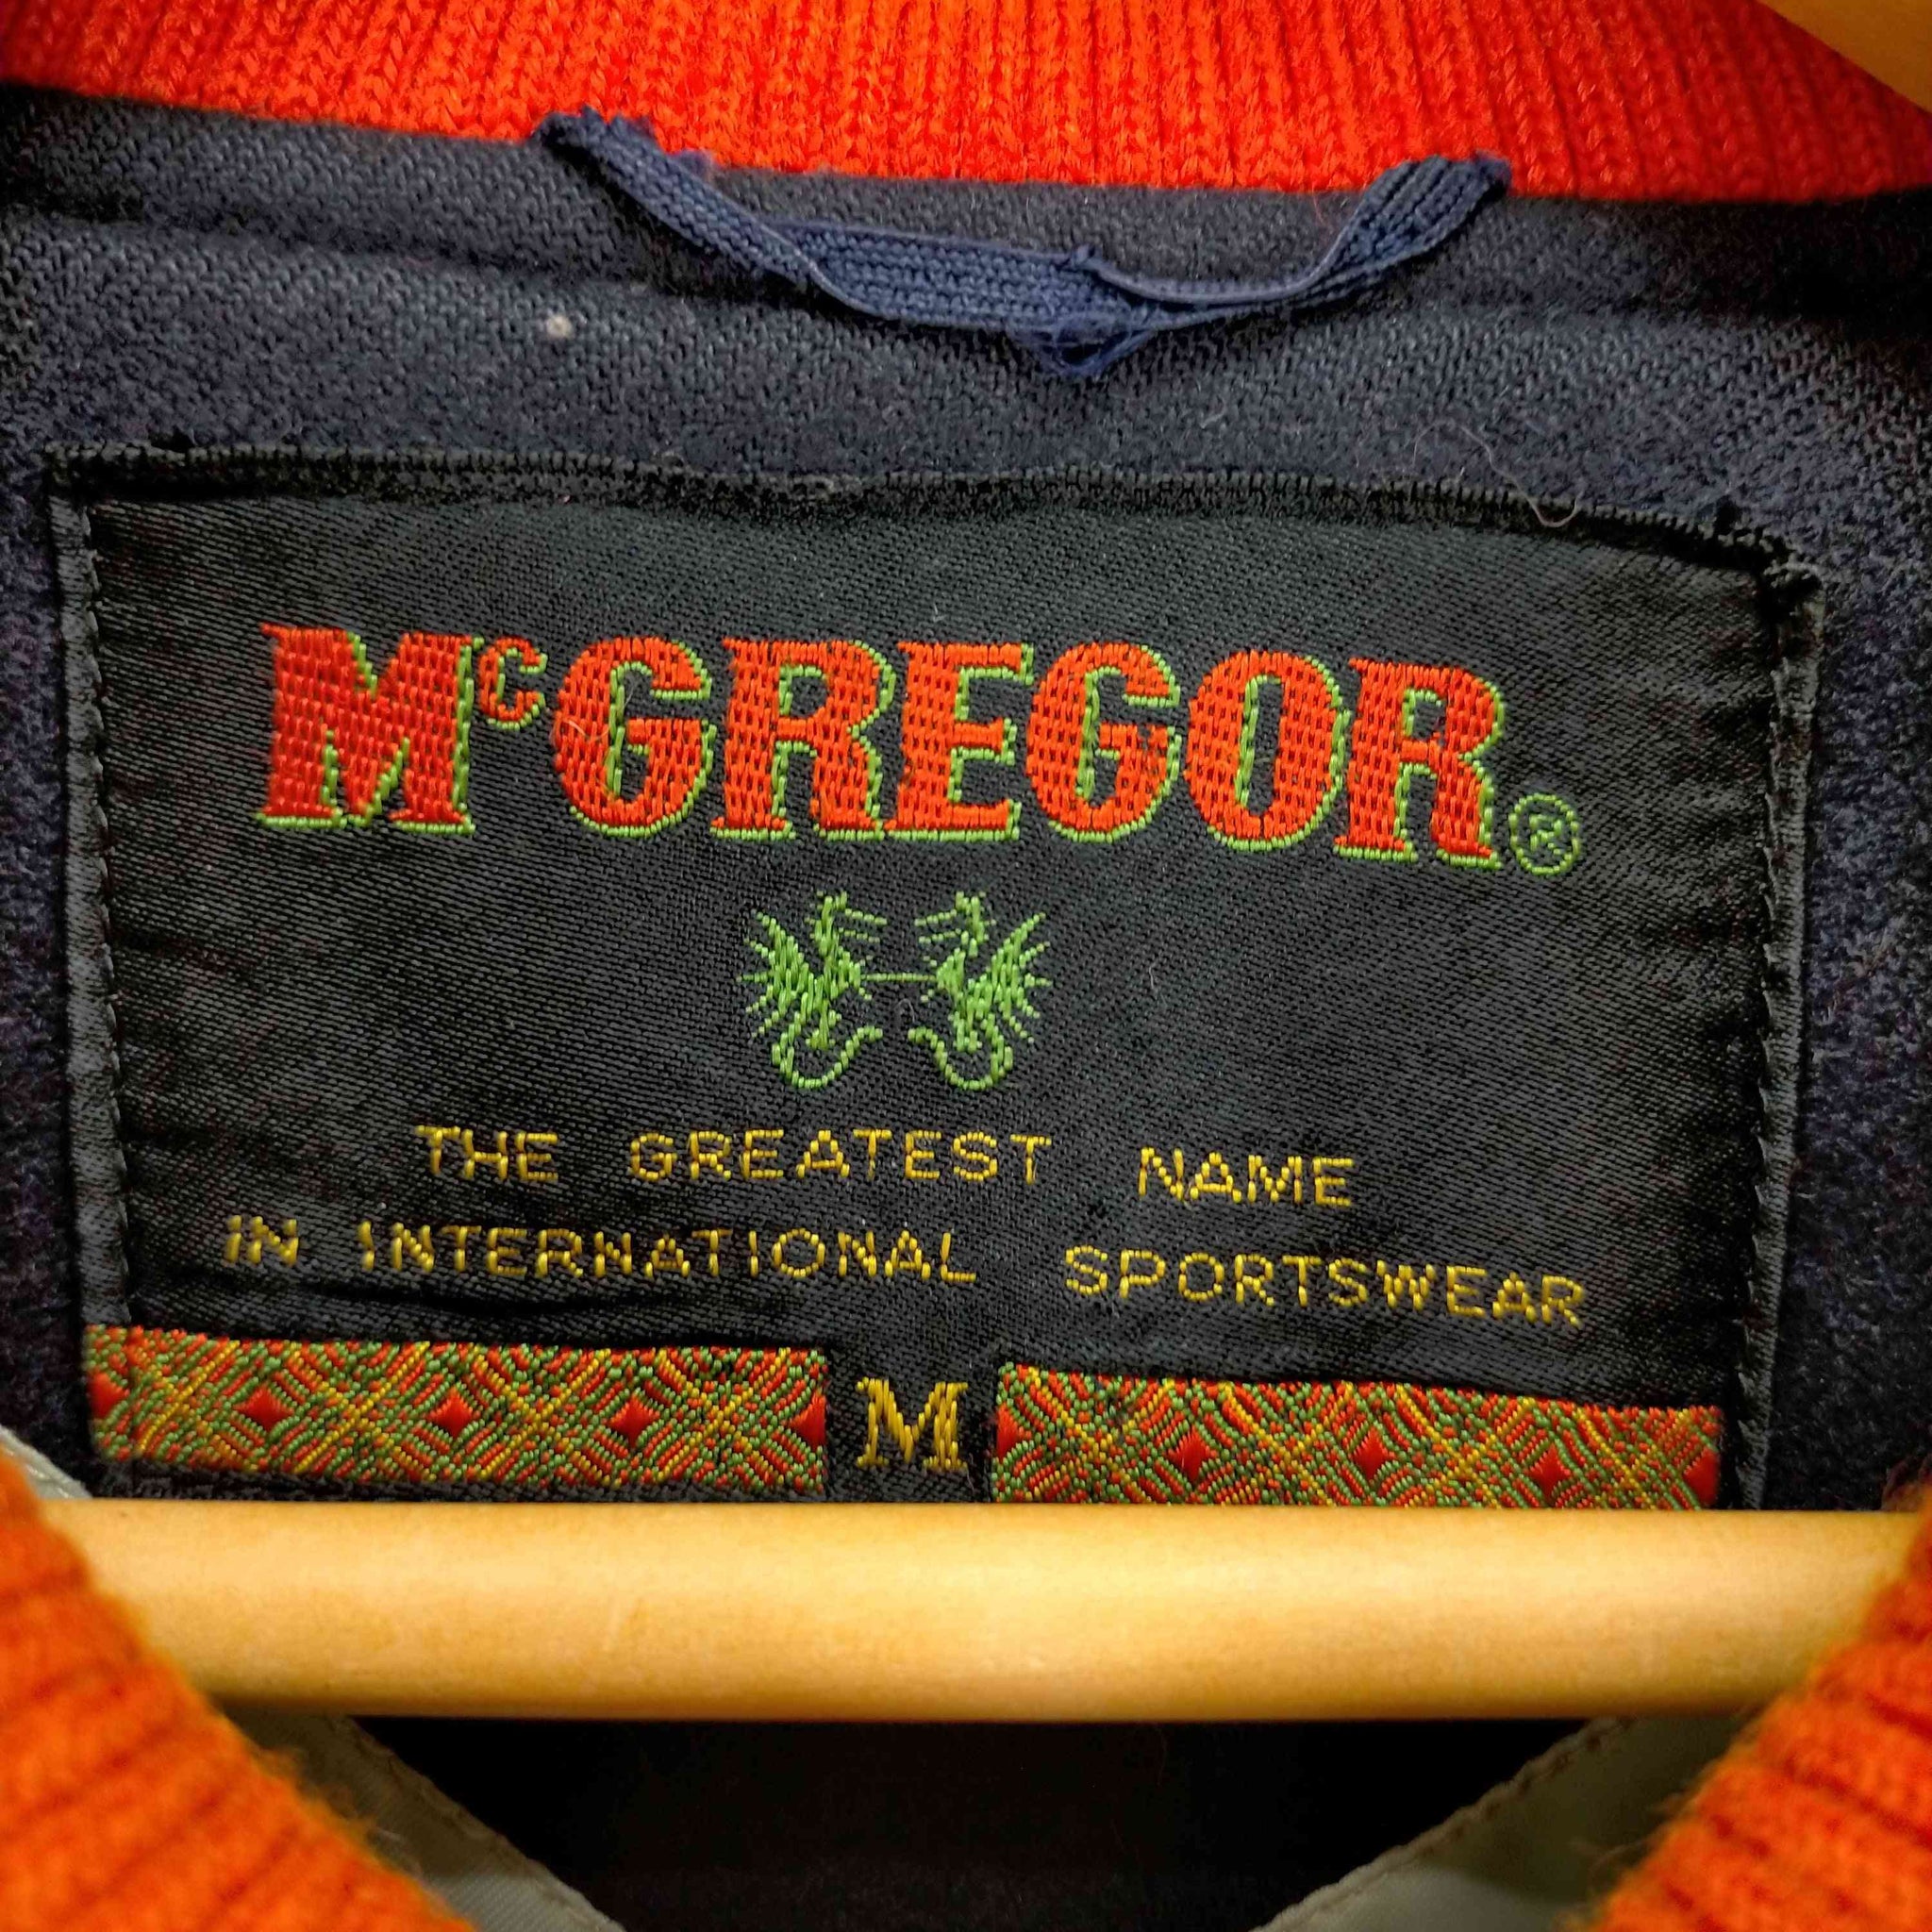 McGREGOR(マックレガー)70s タツノオトシゴタグ ロゴ刺繍スタジャン